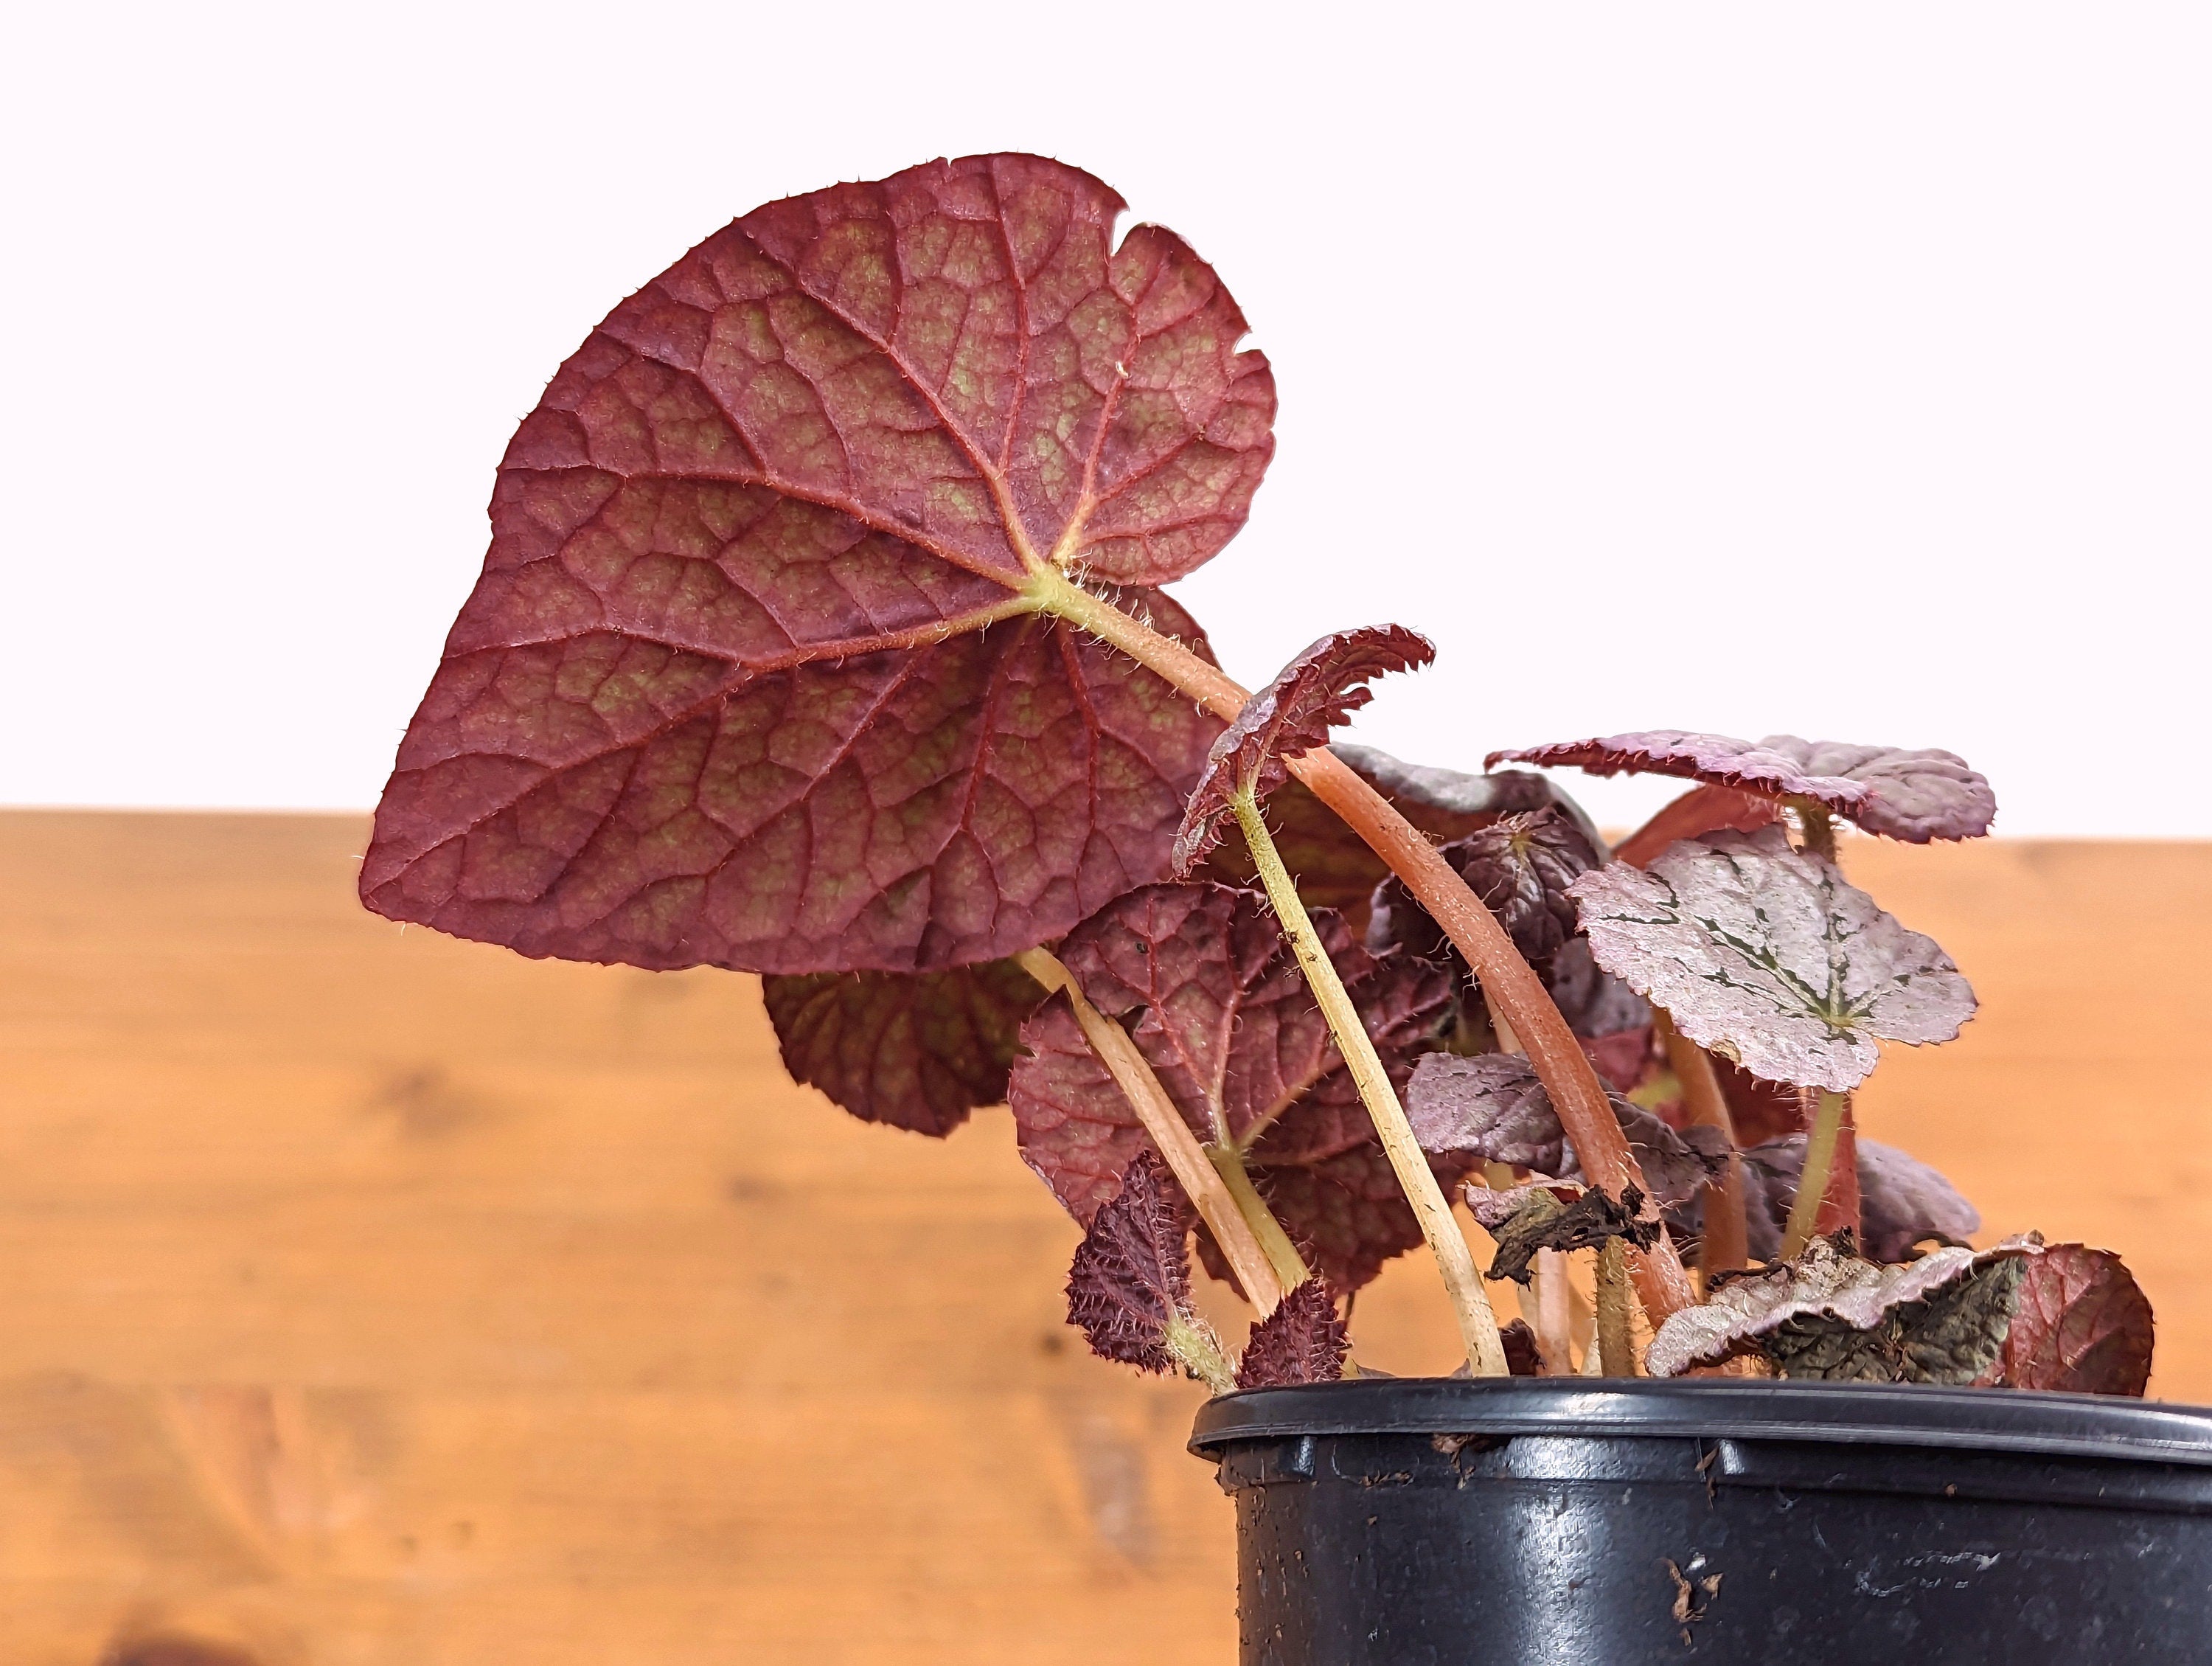 Begonia Arctic Breeze Chayo - Live Indoor Houseplant in 4 Inch Nursery Pot